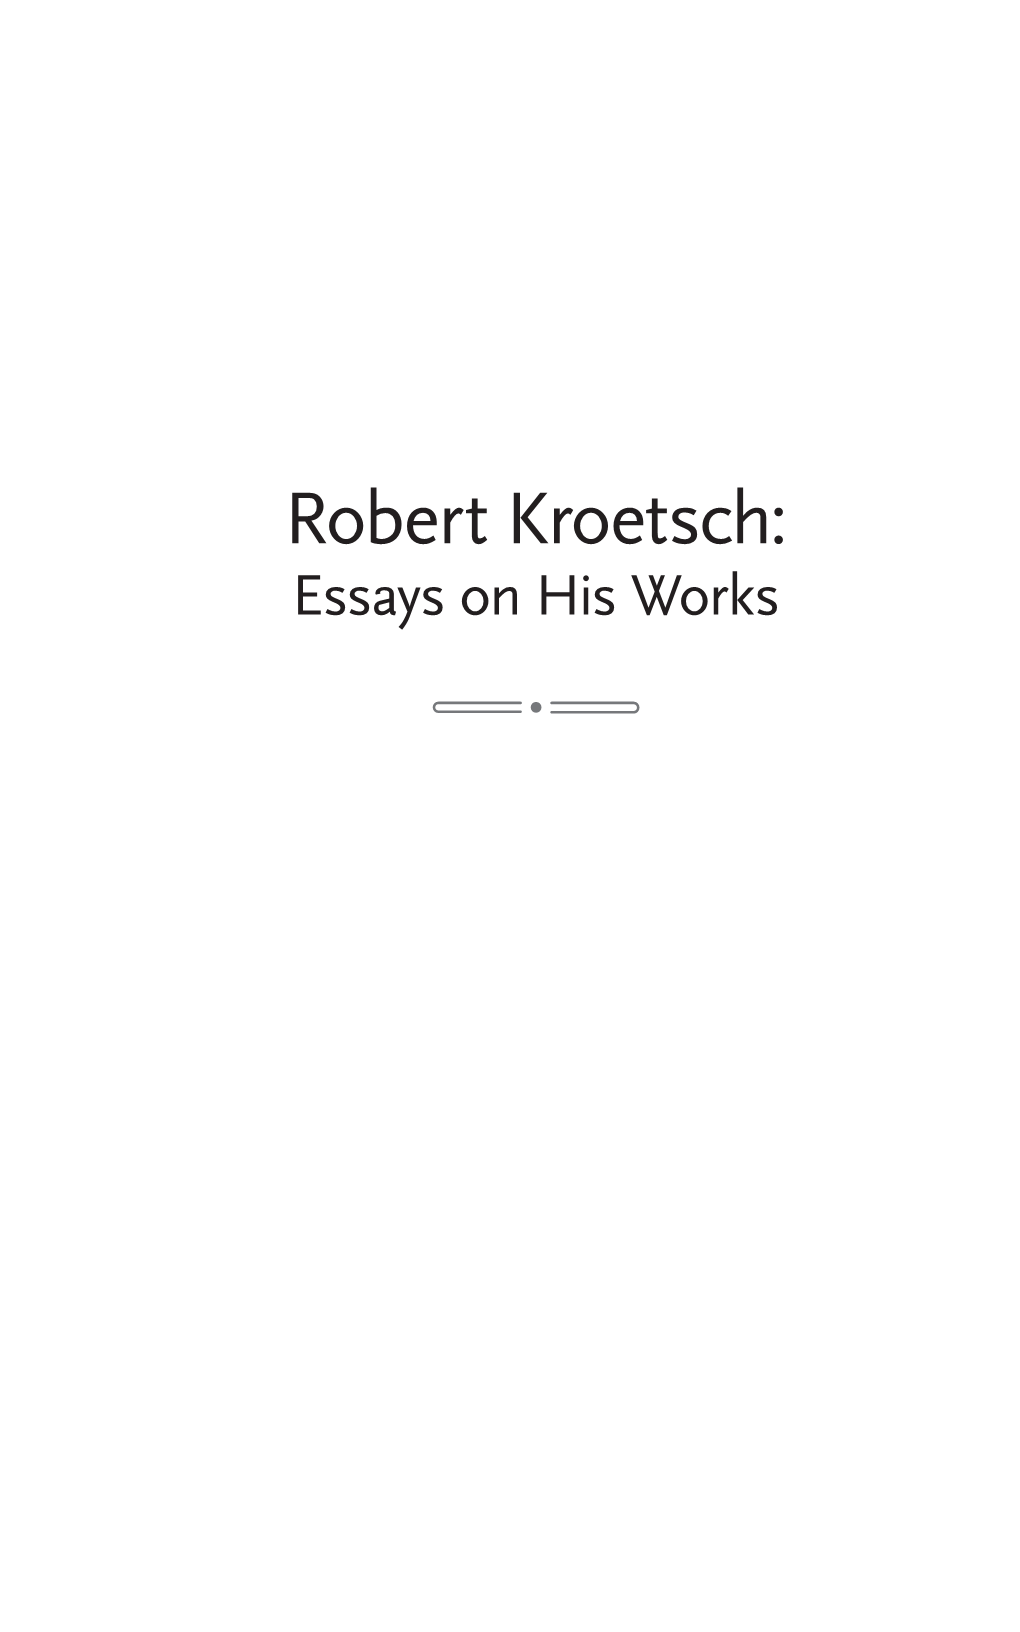 Robert Kroetsch: Essays on His Works Robert Kroetsch: Essays on His Works